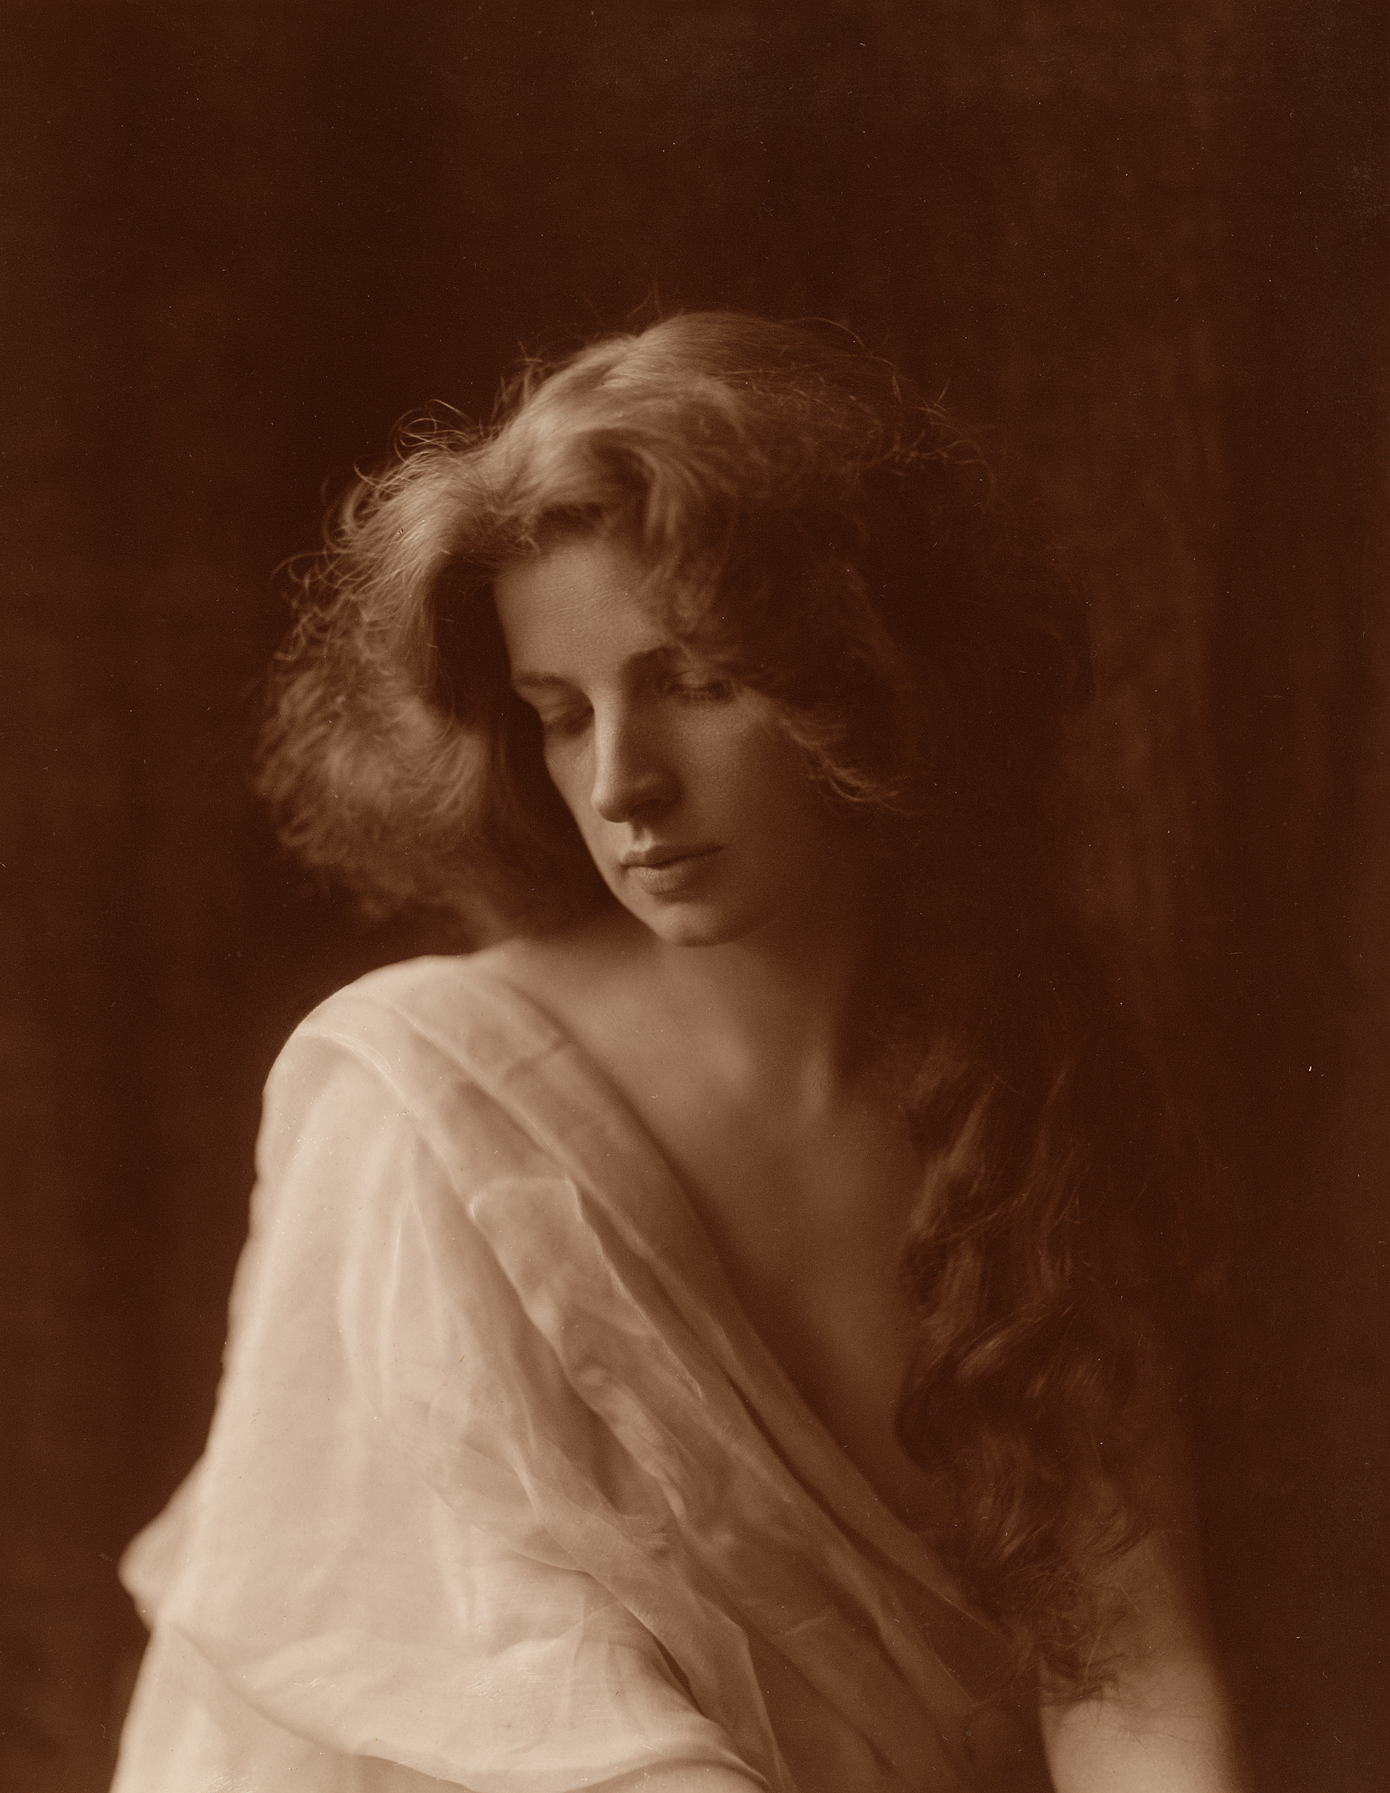 alfred-nybom-nuori-nainen-1905-suomen-valokuvataiteen-museon-kokoelma.jpg